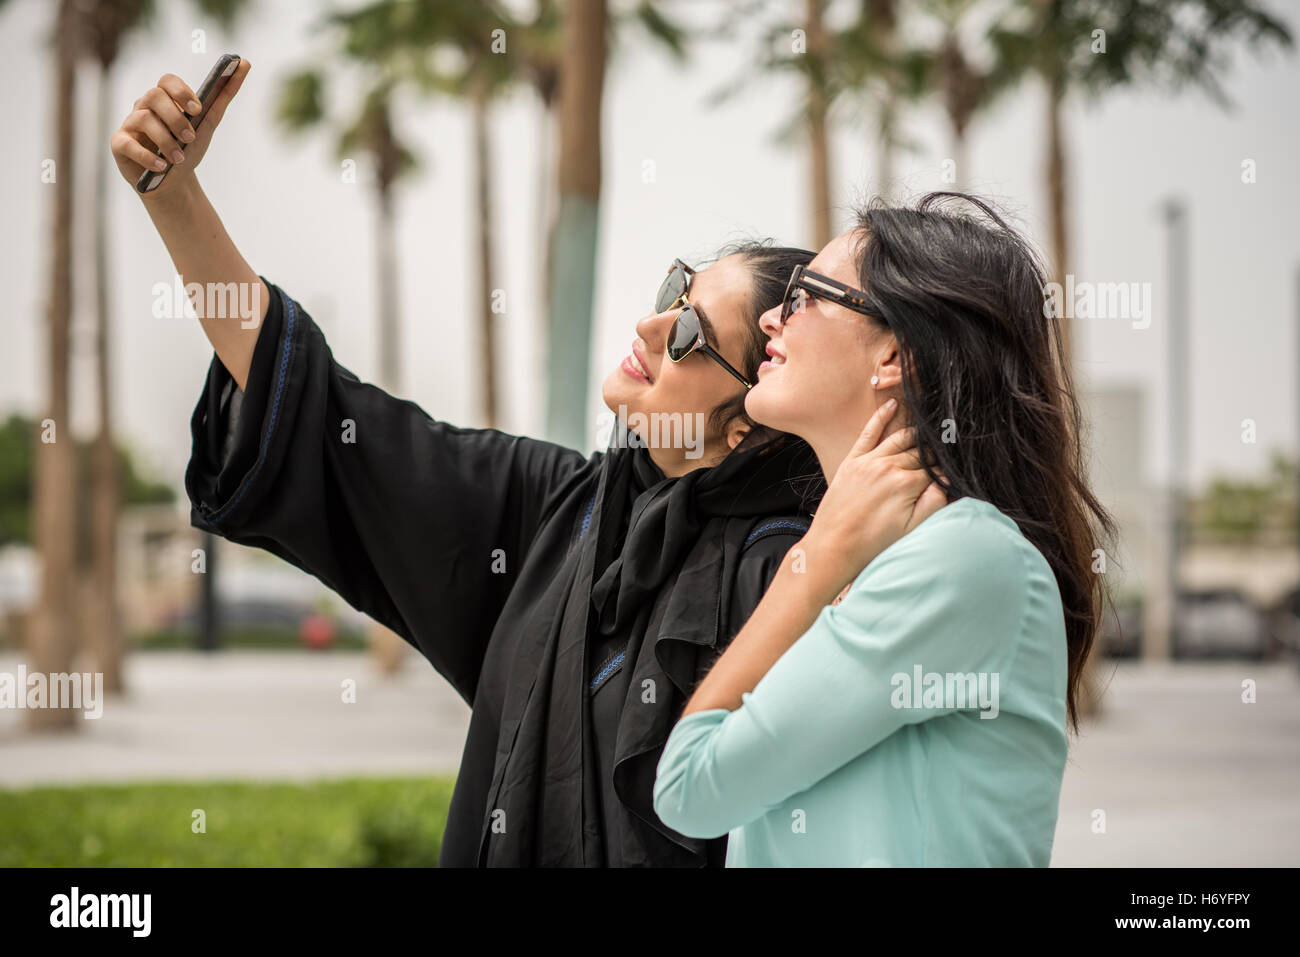 Junge Naher Osten Frau tragen traditionelle Kleidung unter Smartphone Selfie mit Freundin, Dubai, Vereinigte Arabische Emirate Stockfoto